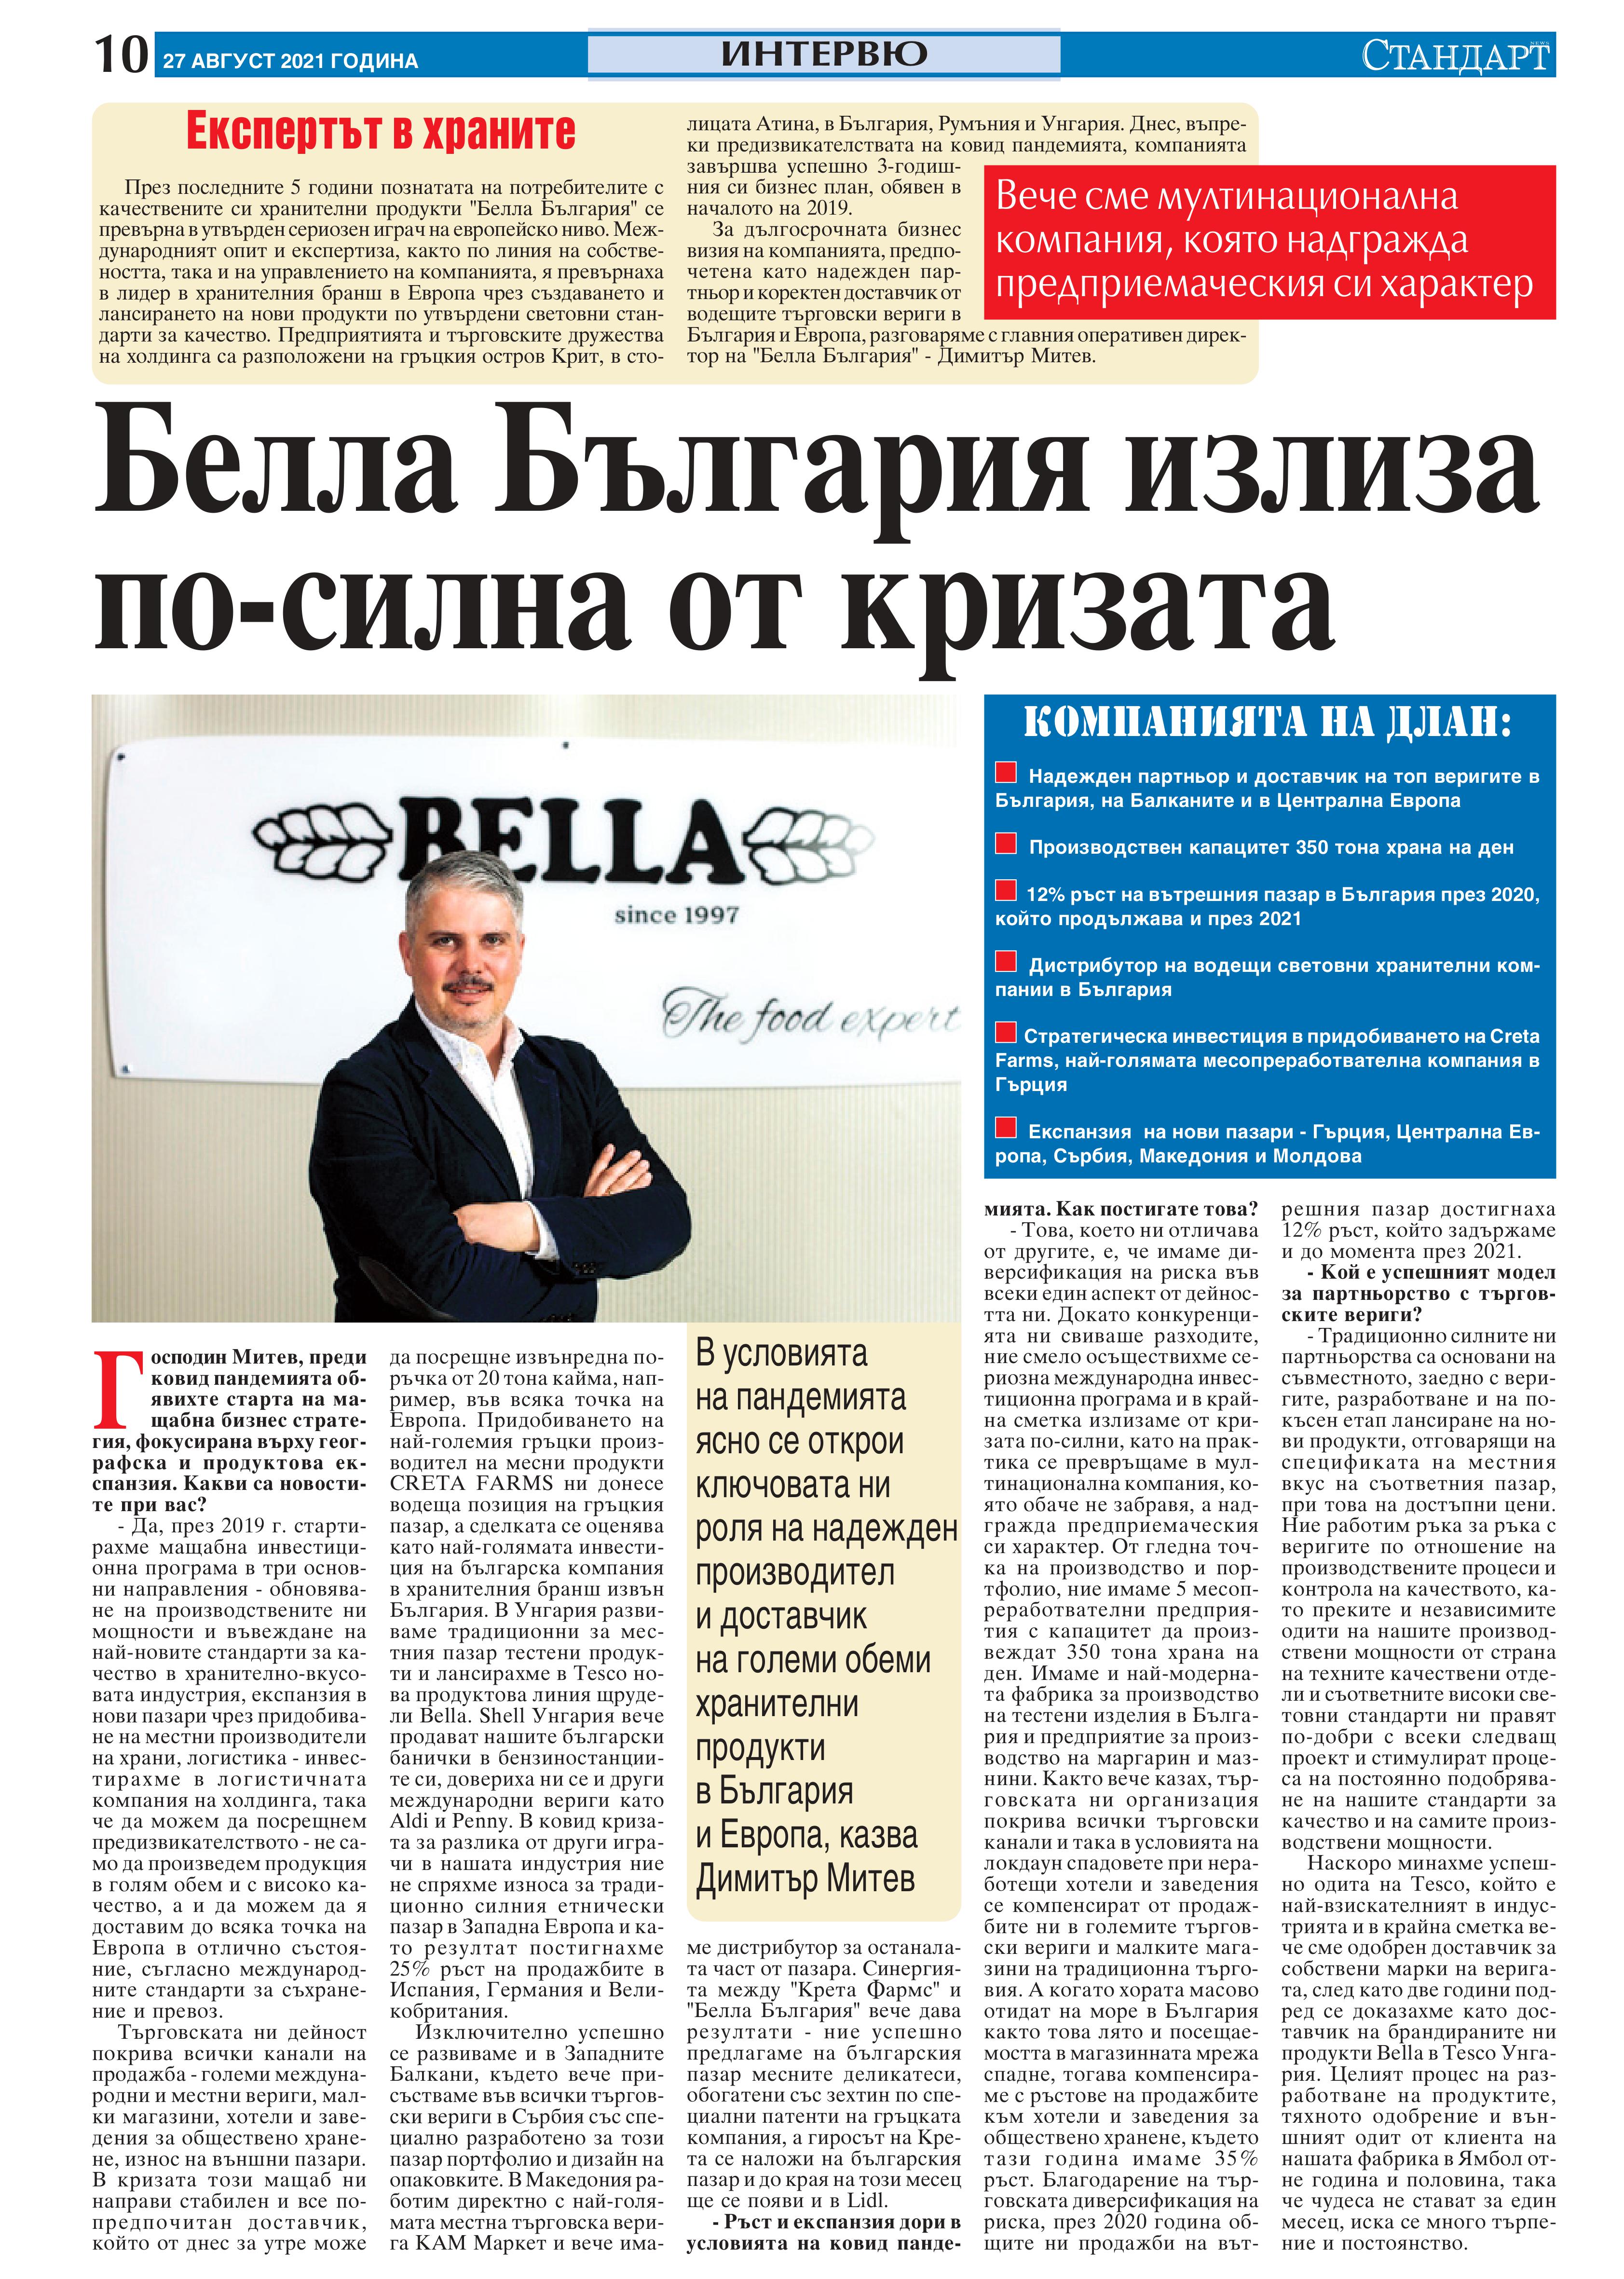 Стандарт /27.08.2021/: Белла България излиза по-силна от кризата